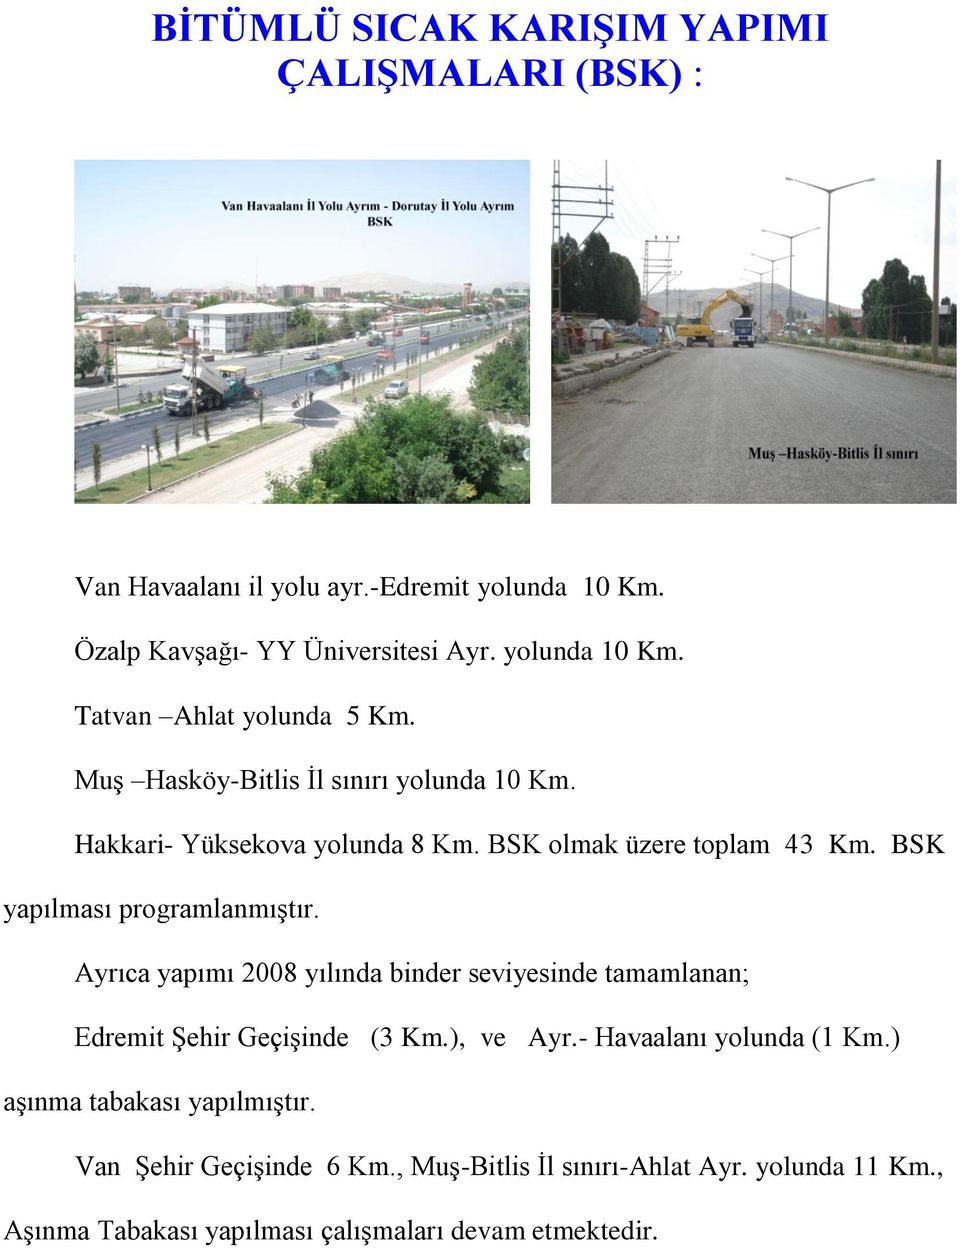 Ayrıca yapımı 2008 yılında binder seviyesinde tamamlanan; Edremit Şehir Geçişinde (3 Km.), ve Ayr.- Havaalanı yolunda (1 Km.